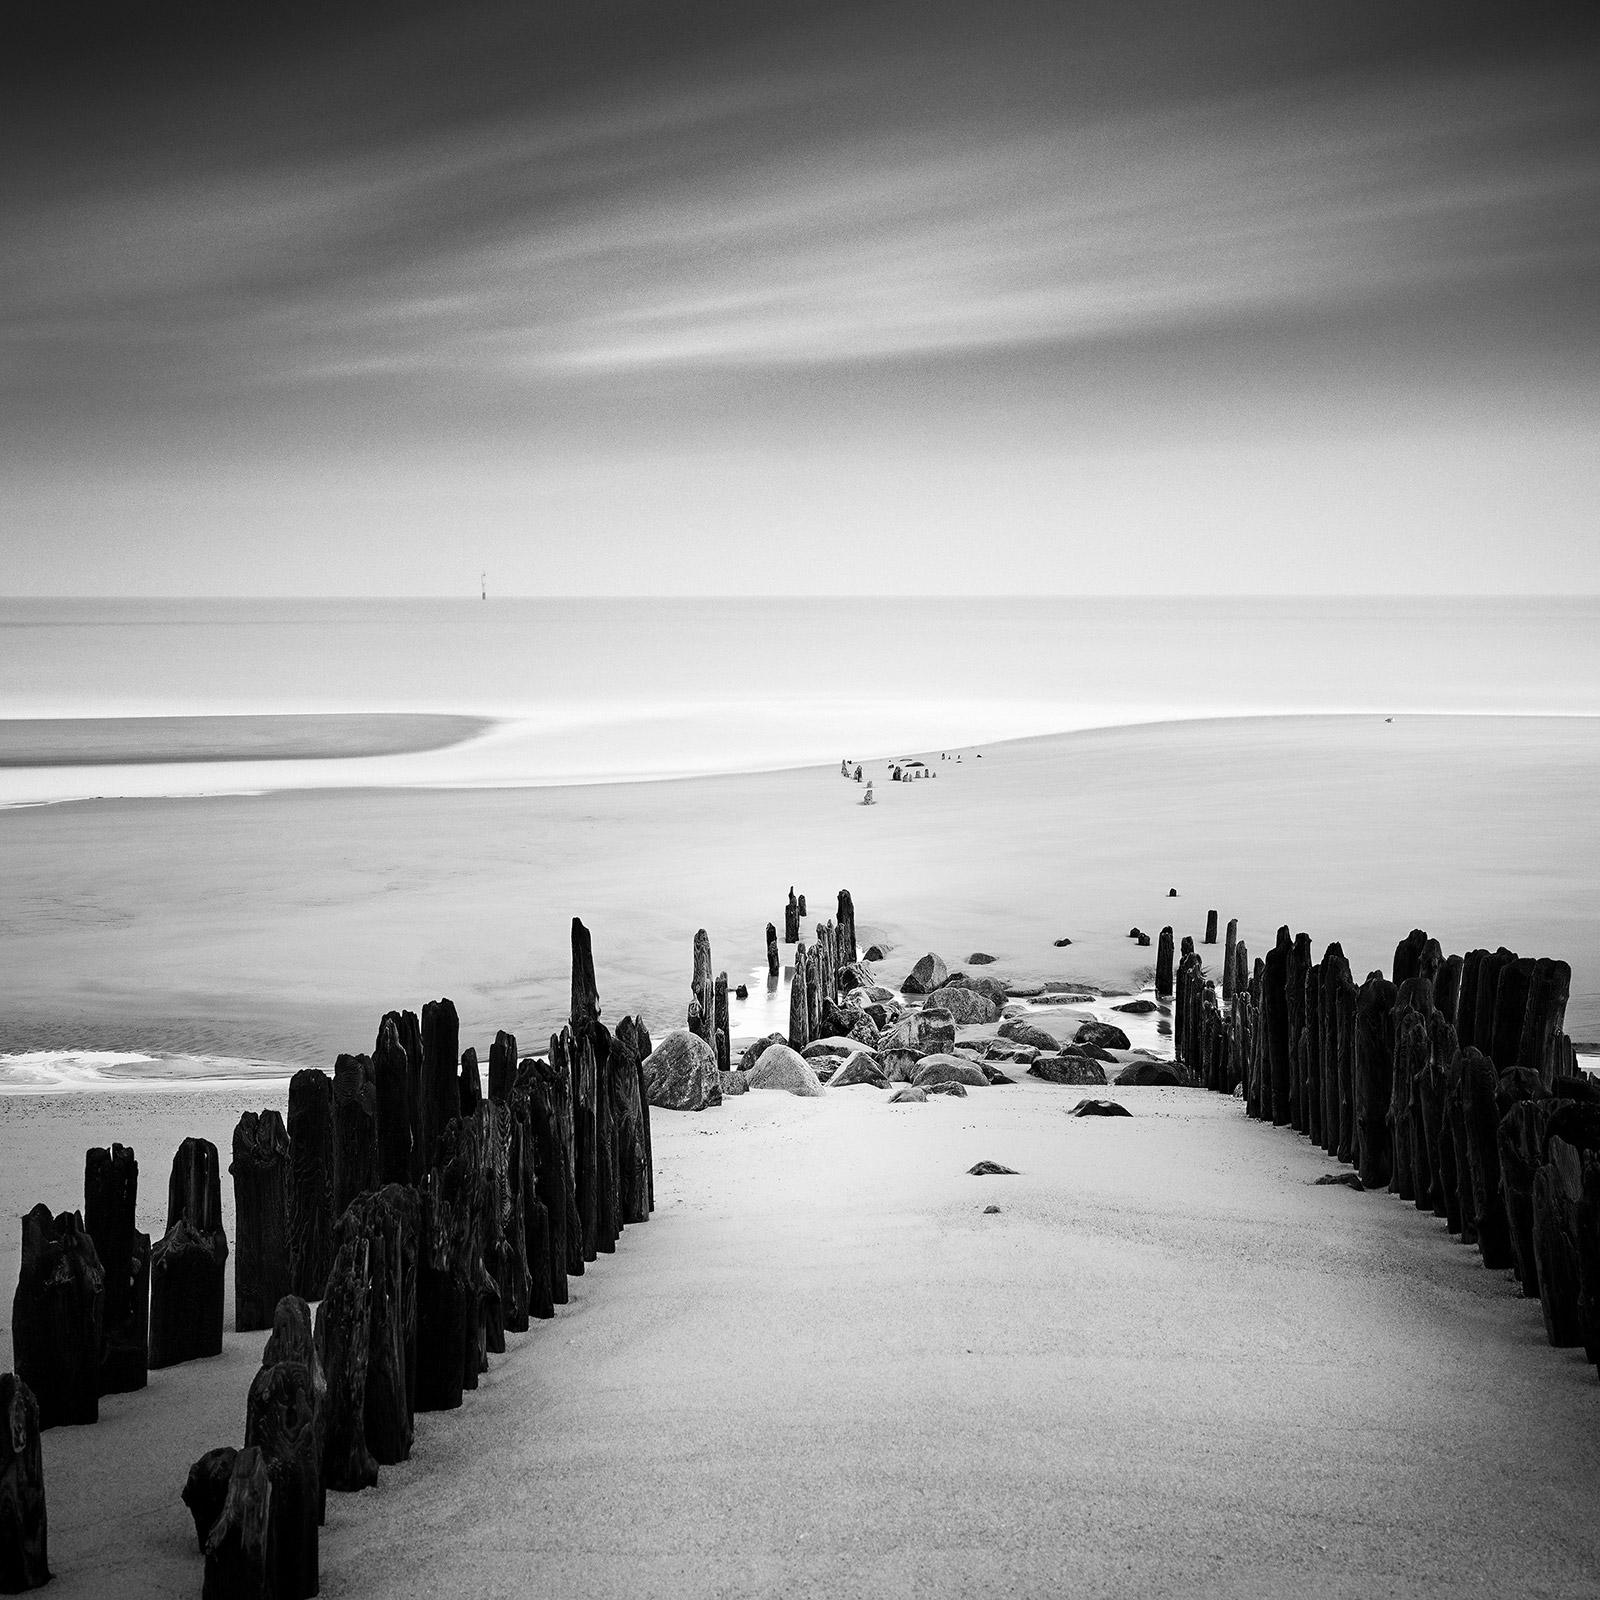 Groyne, Wavebreaker, Beach, Sylt, Allemagne, tirage photo de paysage aquatique en noir et blanc